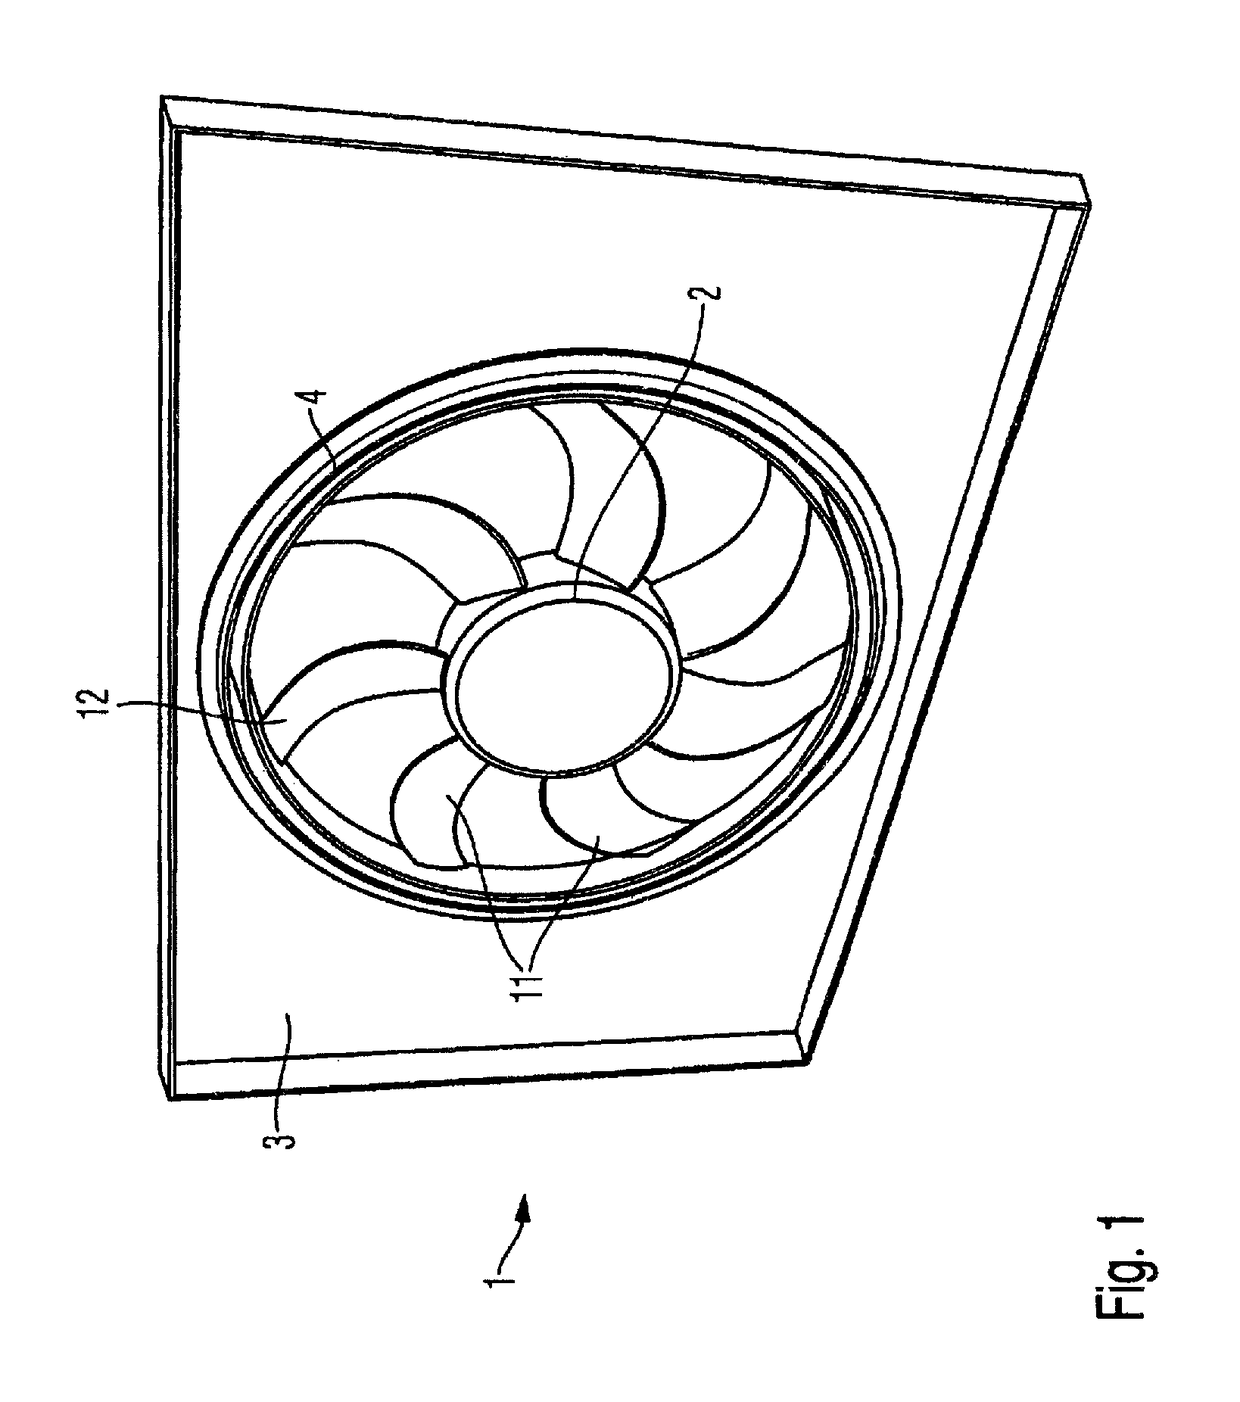 Cooling fan module